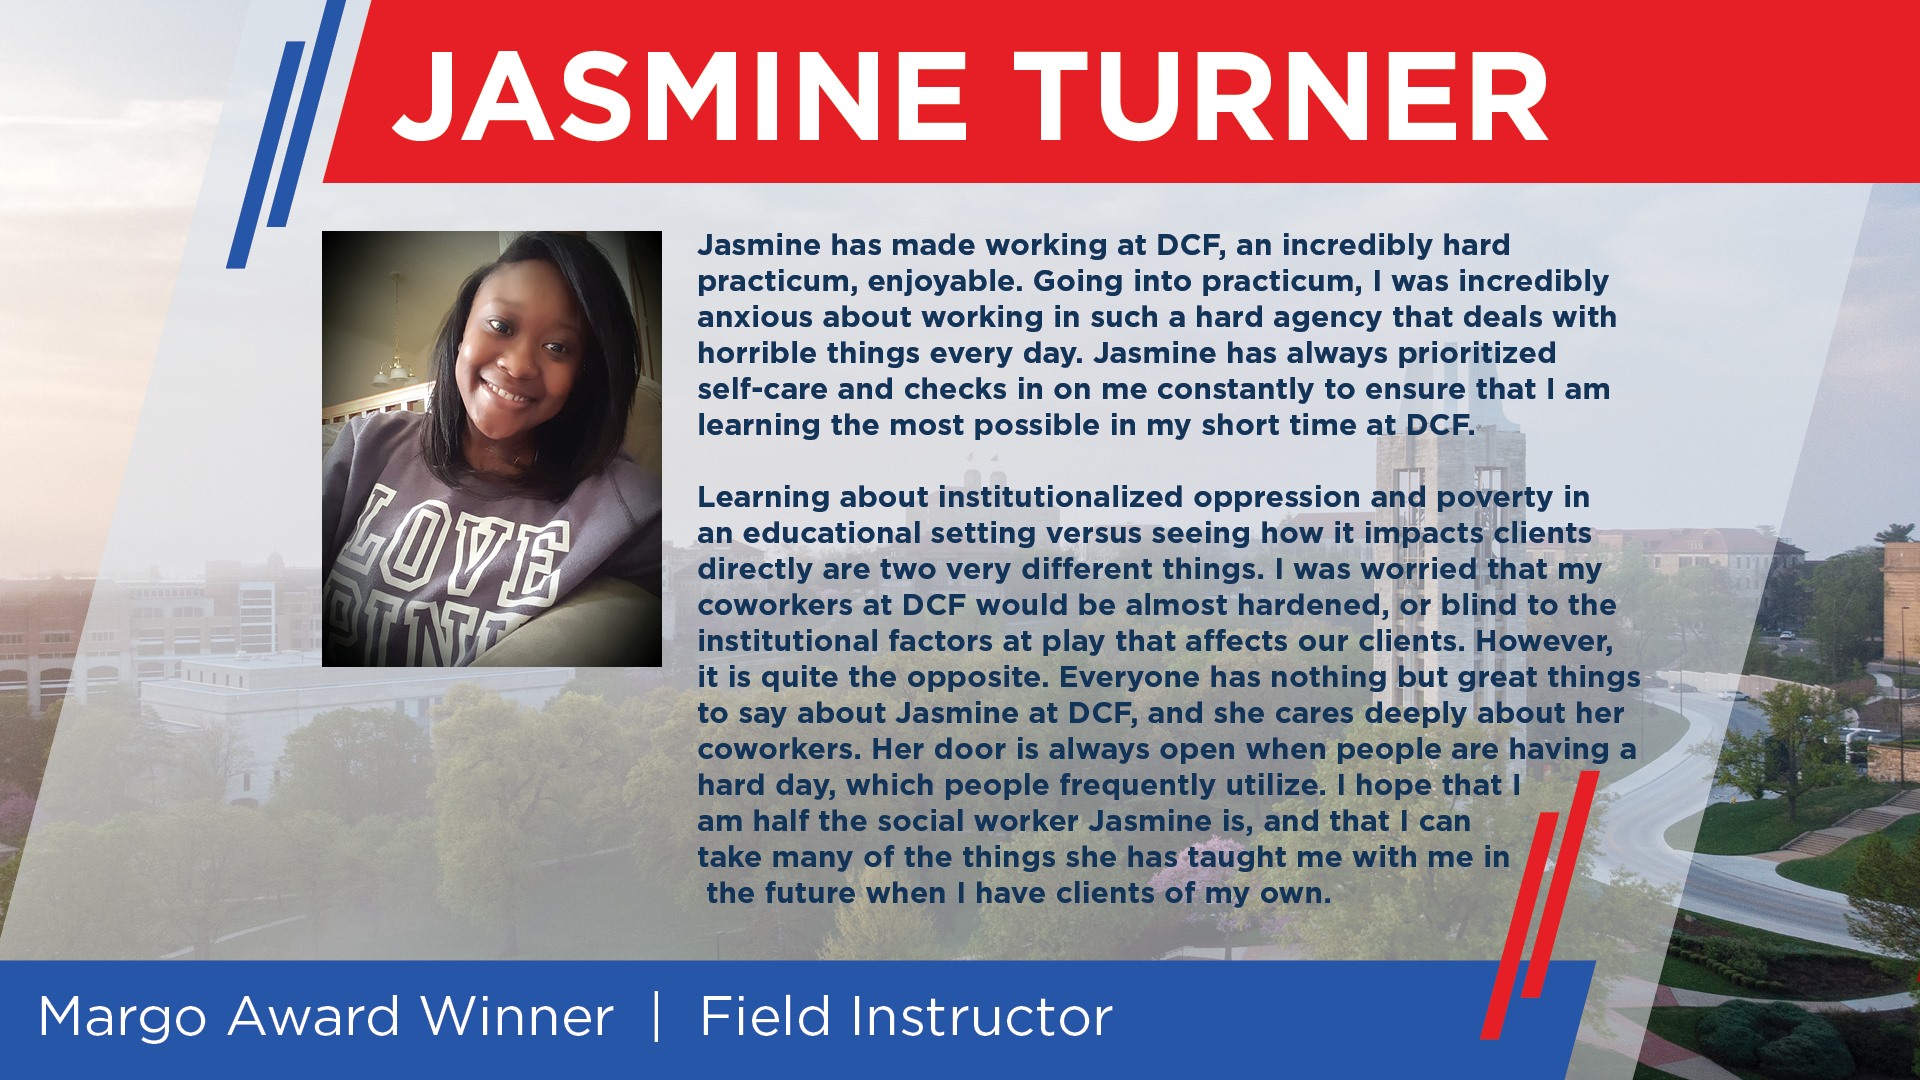 Field Instructor Margo Award Winner - Jasmine Turner